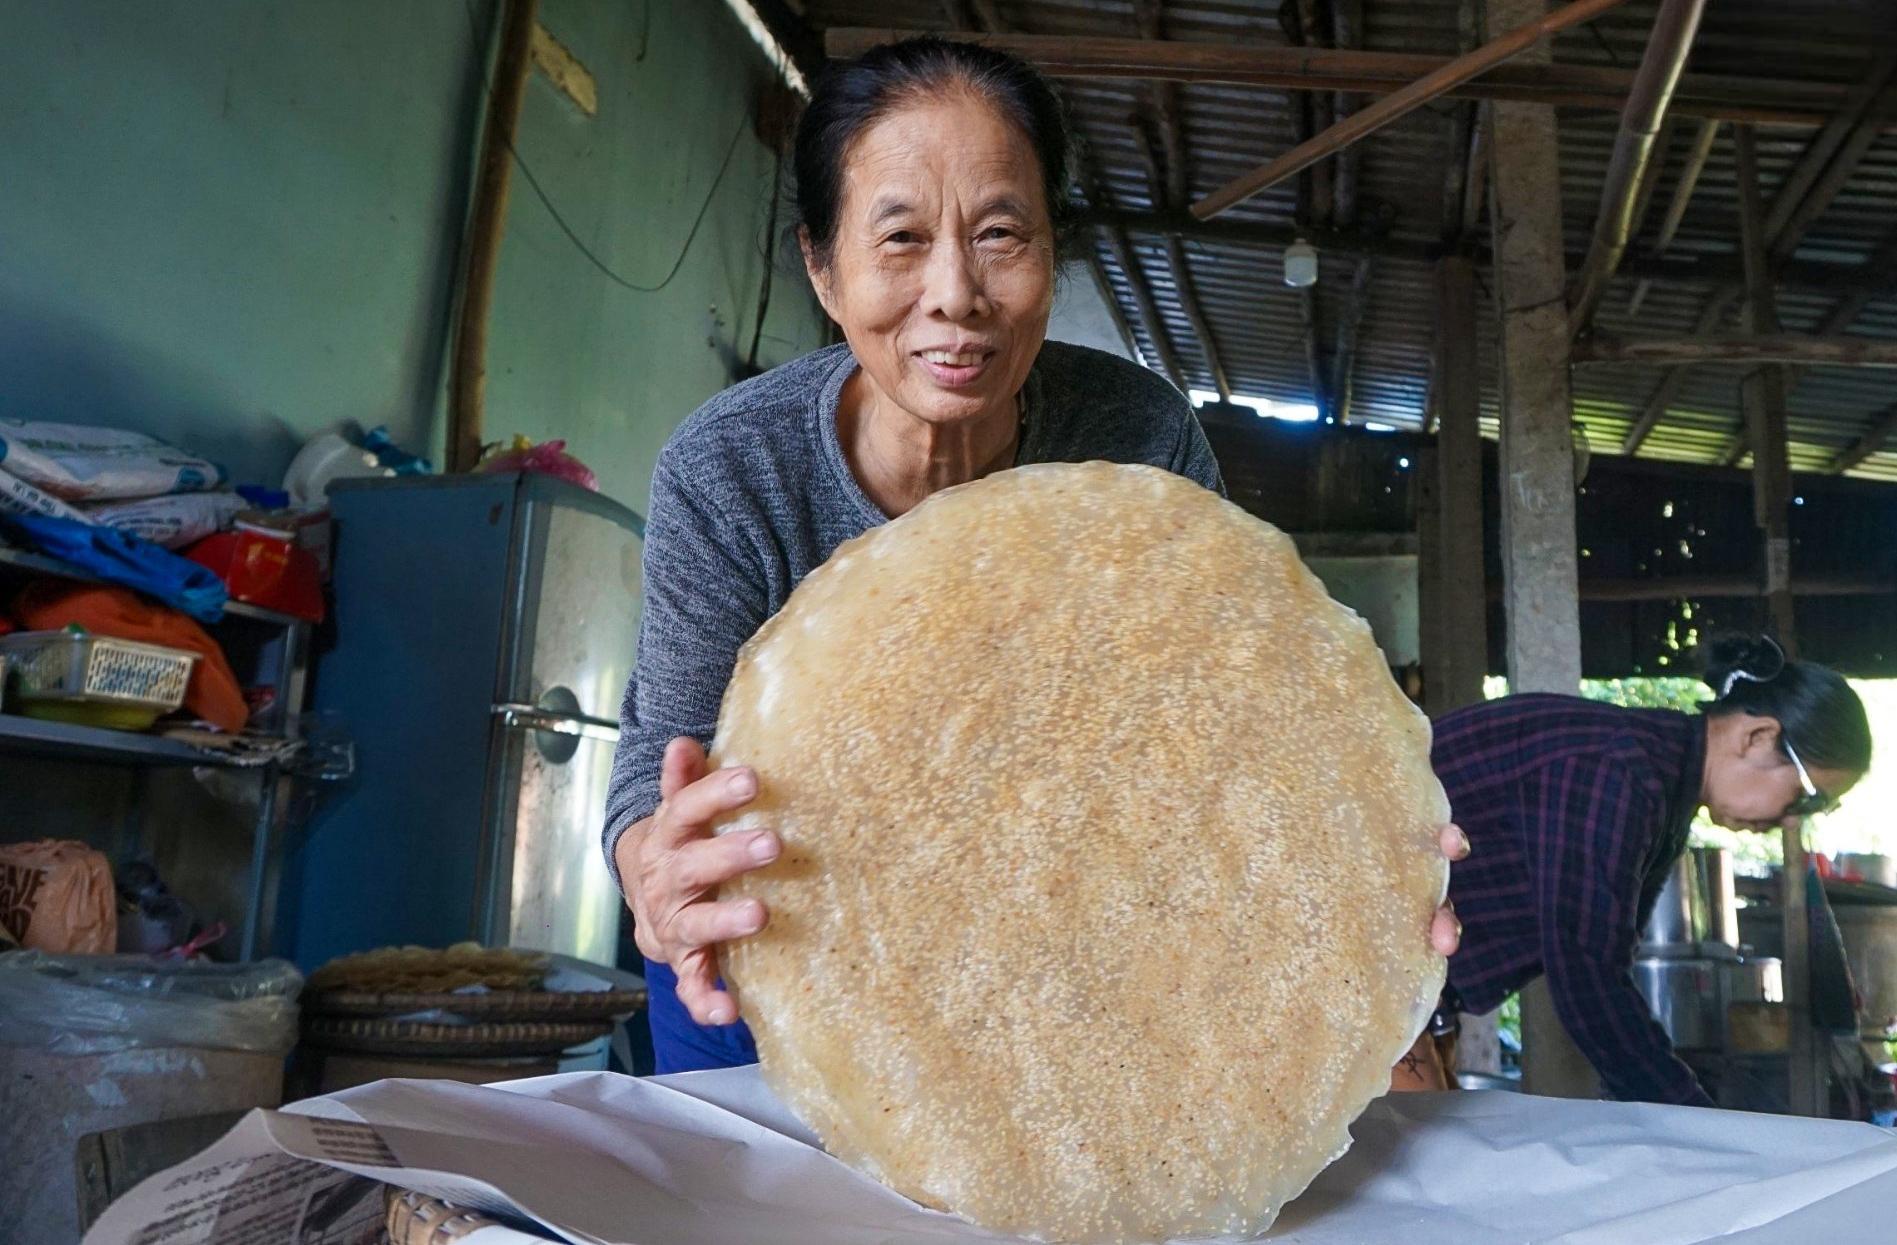 Có gì đặc biệt ở làng nghề bánh tráng Túy Loan vừa được công nhận là di sản văn hoá? - Ảnh 12.